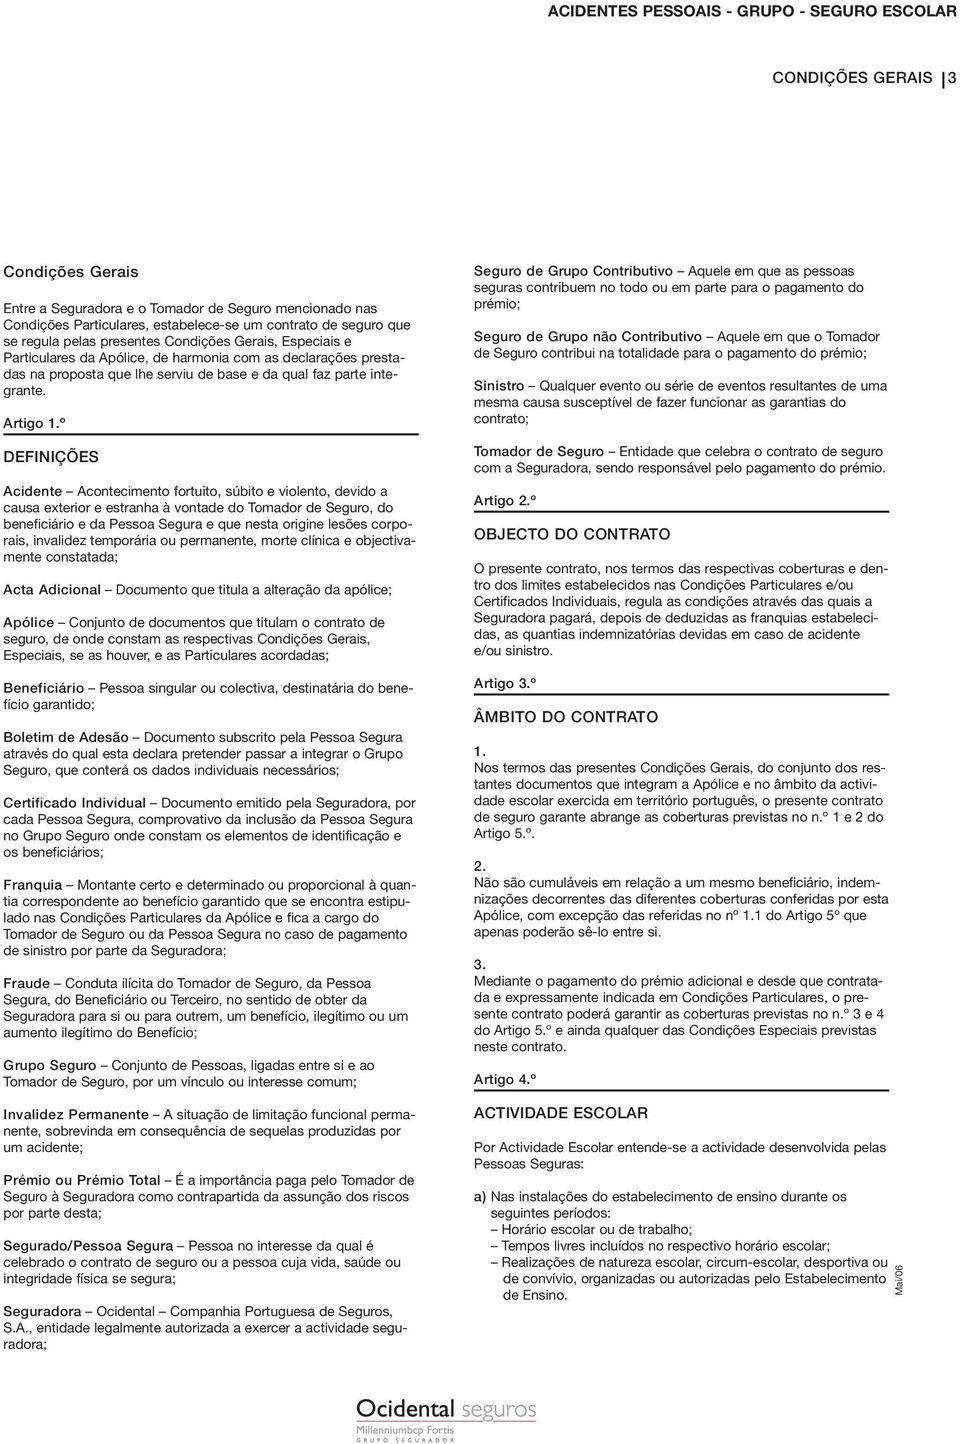 CONDIÇÕES GERAIS E ESPECIAIS. Acidentes Pessoais GRUPO Seguro Escolar - PDF  Free Download